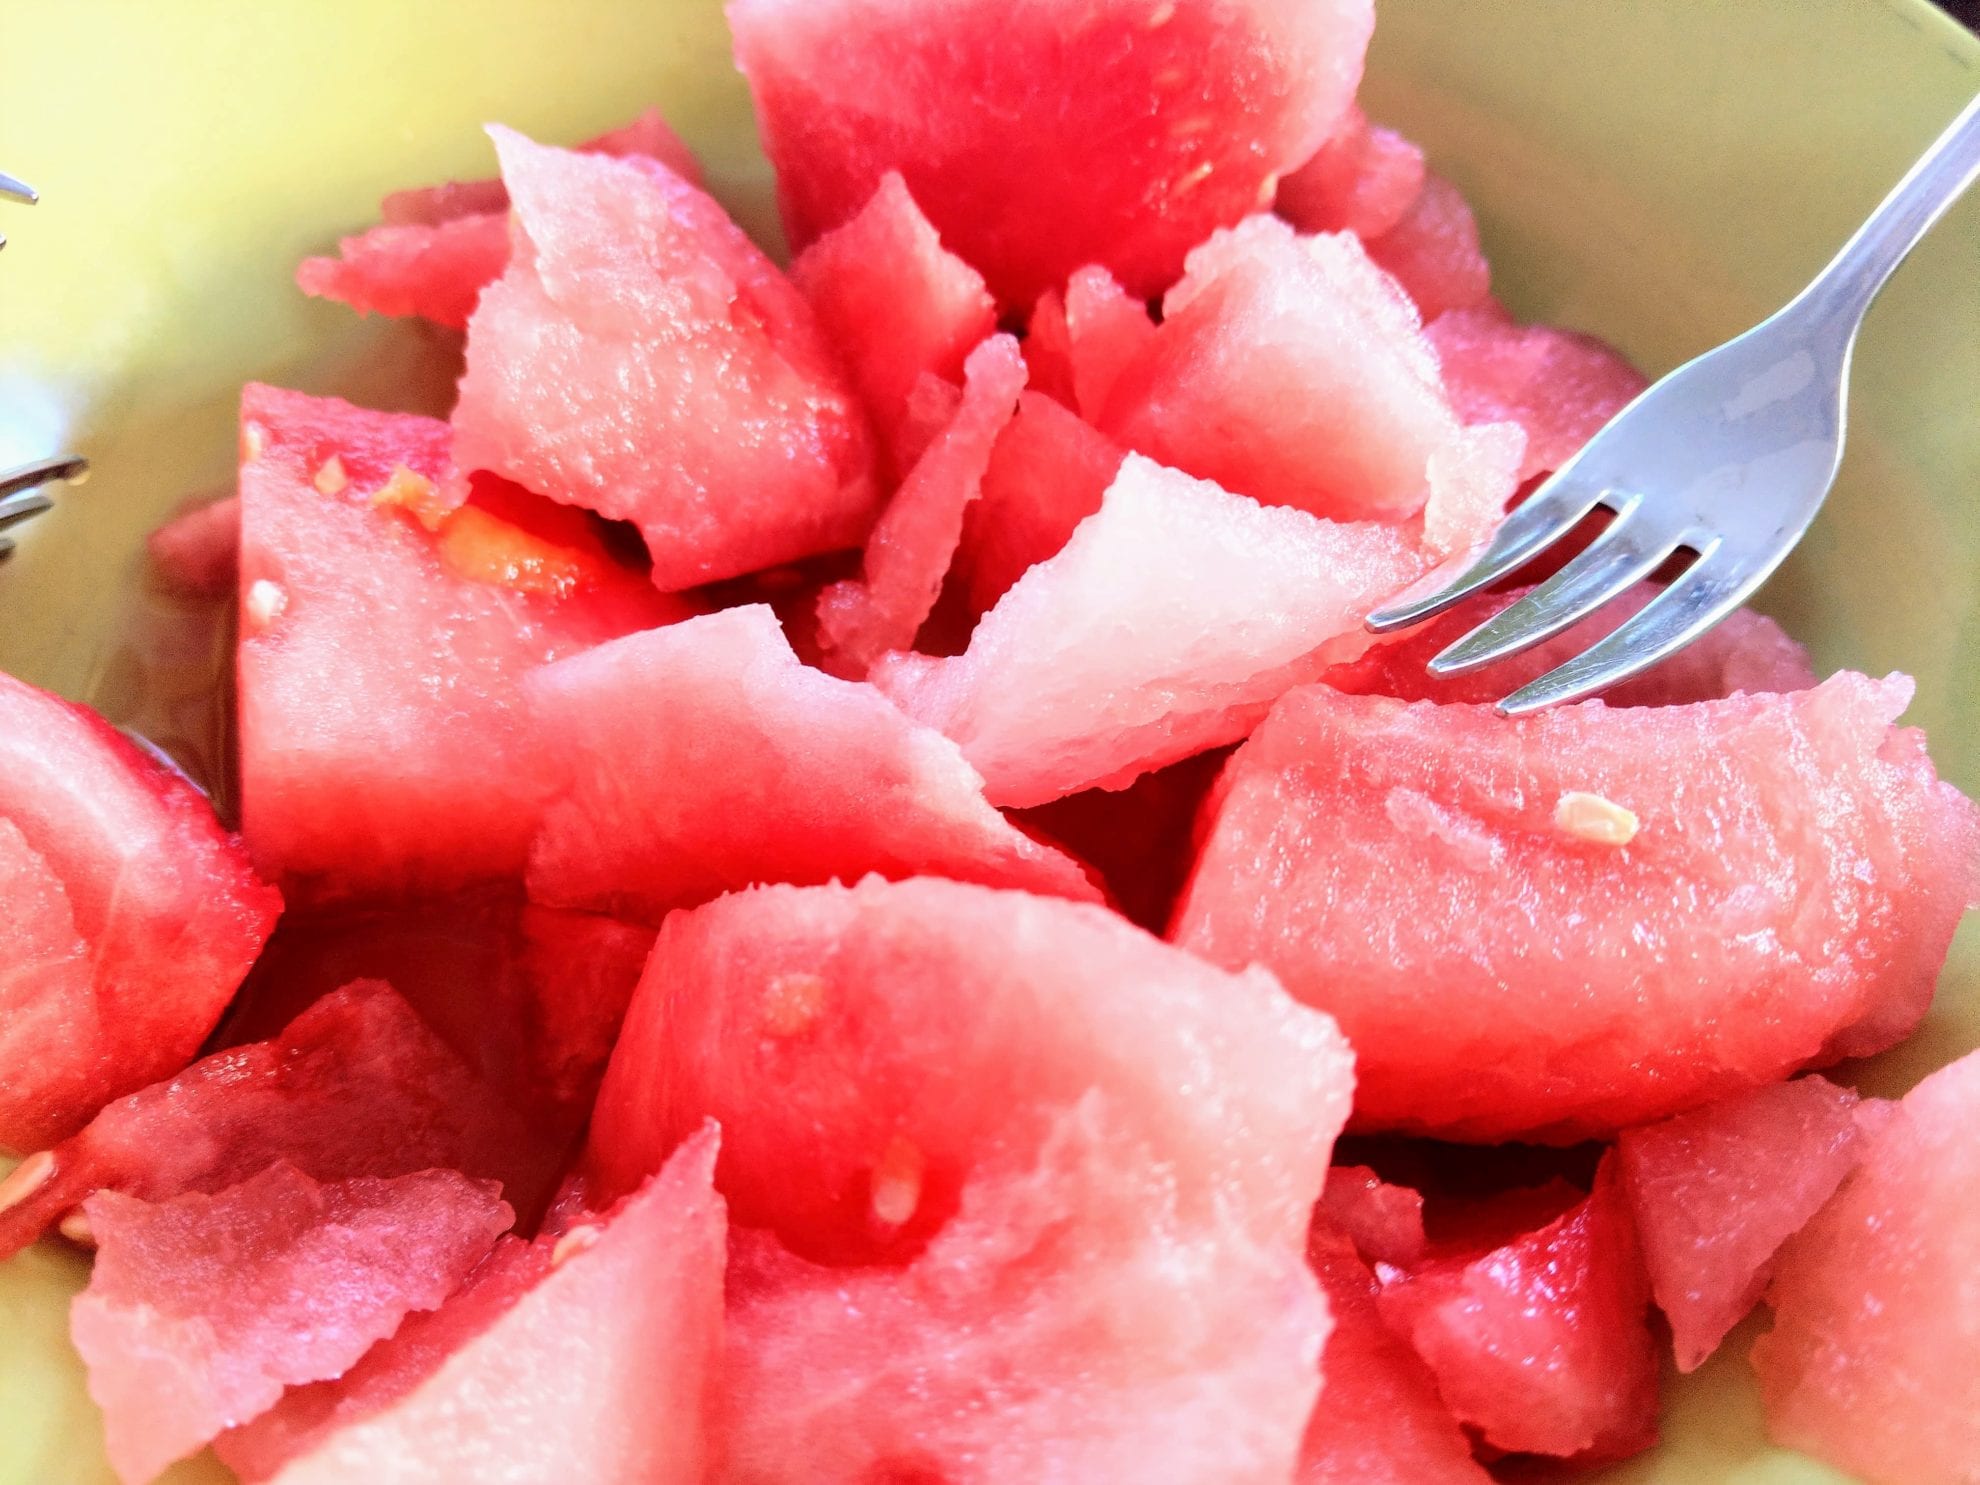 Wir sind absolute Melonenliebhaber. Deshalb essen wir sie, solange es geht. Saftige Wassermelone in mundgerechten Stücken für das 12 von 12 im August 2018 von Puddingklecks.de